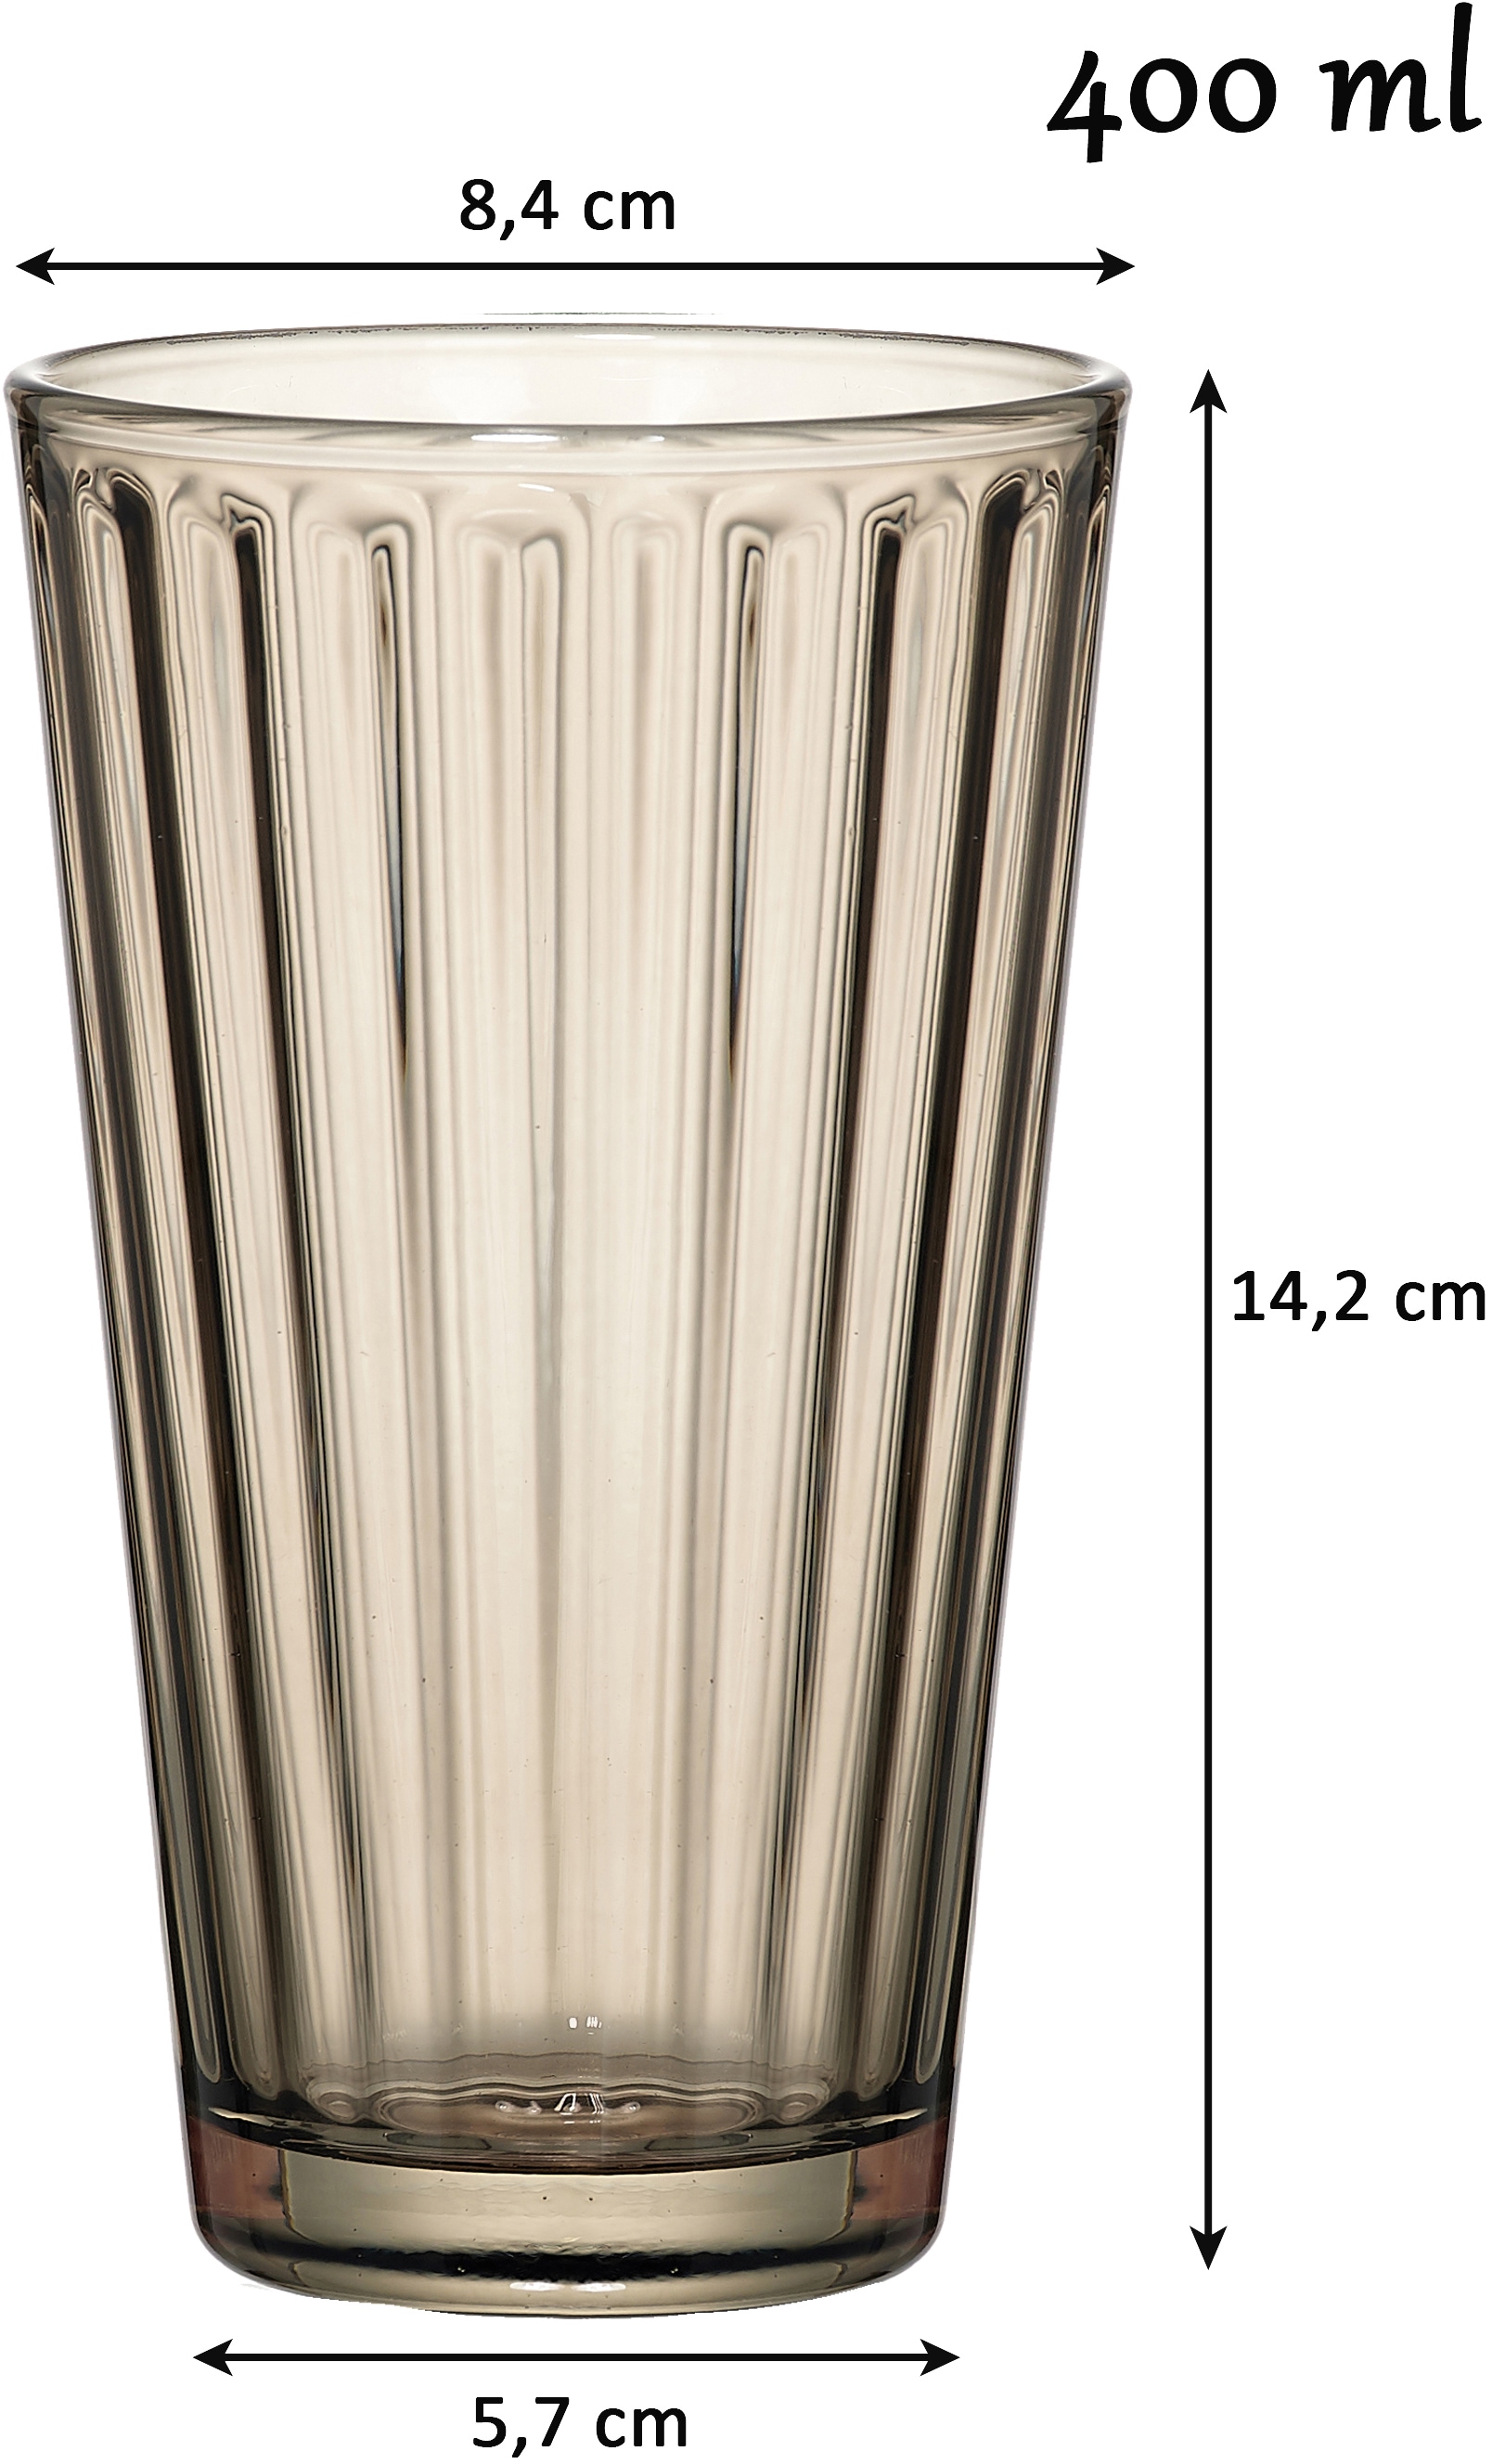 Ritzenhoff & Breker Longdrinkglas »Lawe«, (Set, 6 tlg., 6 Longdrinkgläser, je 400 ml), topaktuelles Innen-Facettierung